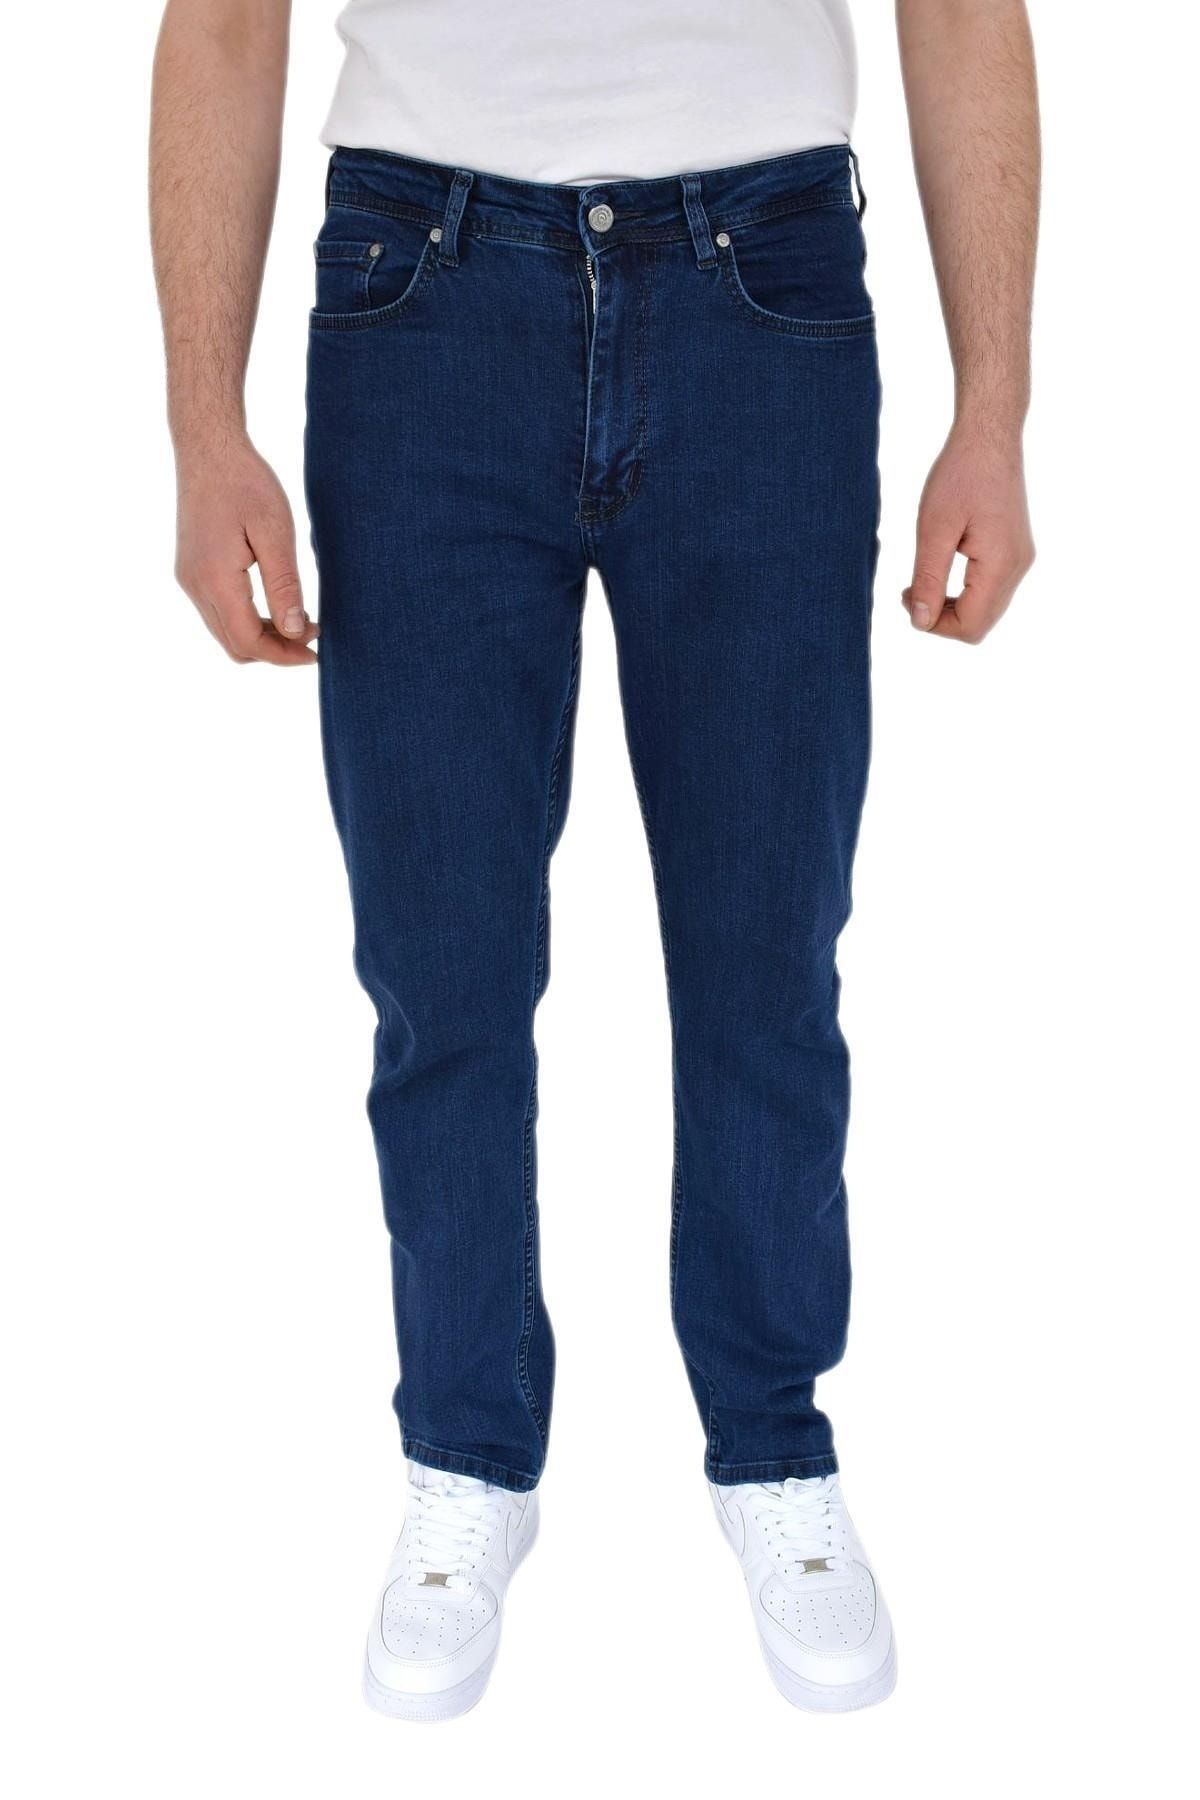 Dynamo Erkek Regular Jeans Pantolon 1700 Bgl-st02750